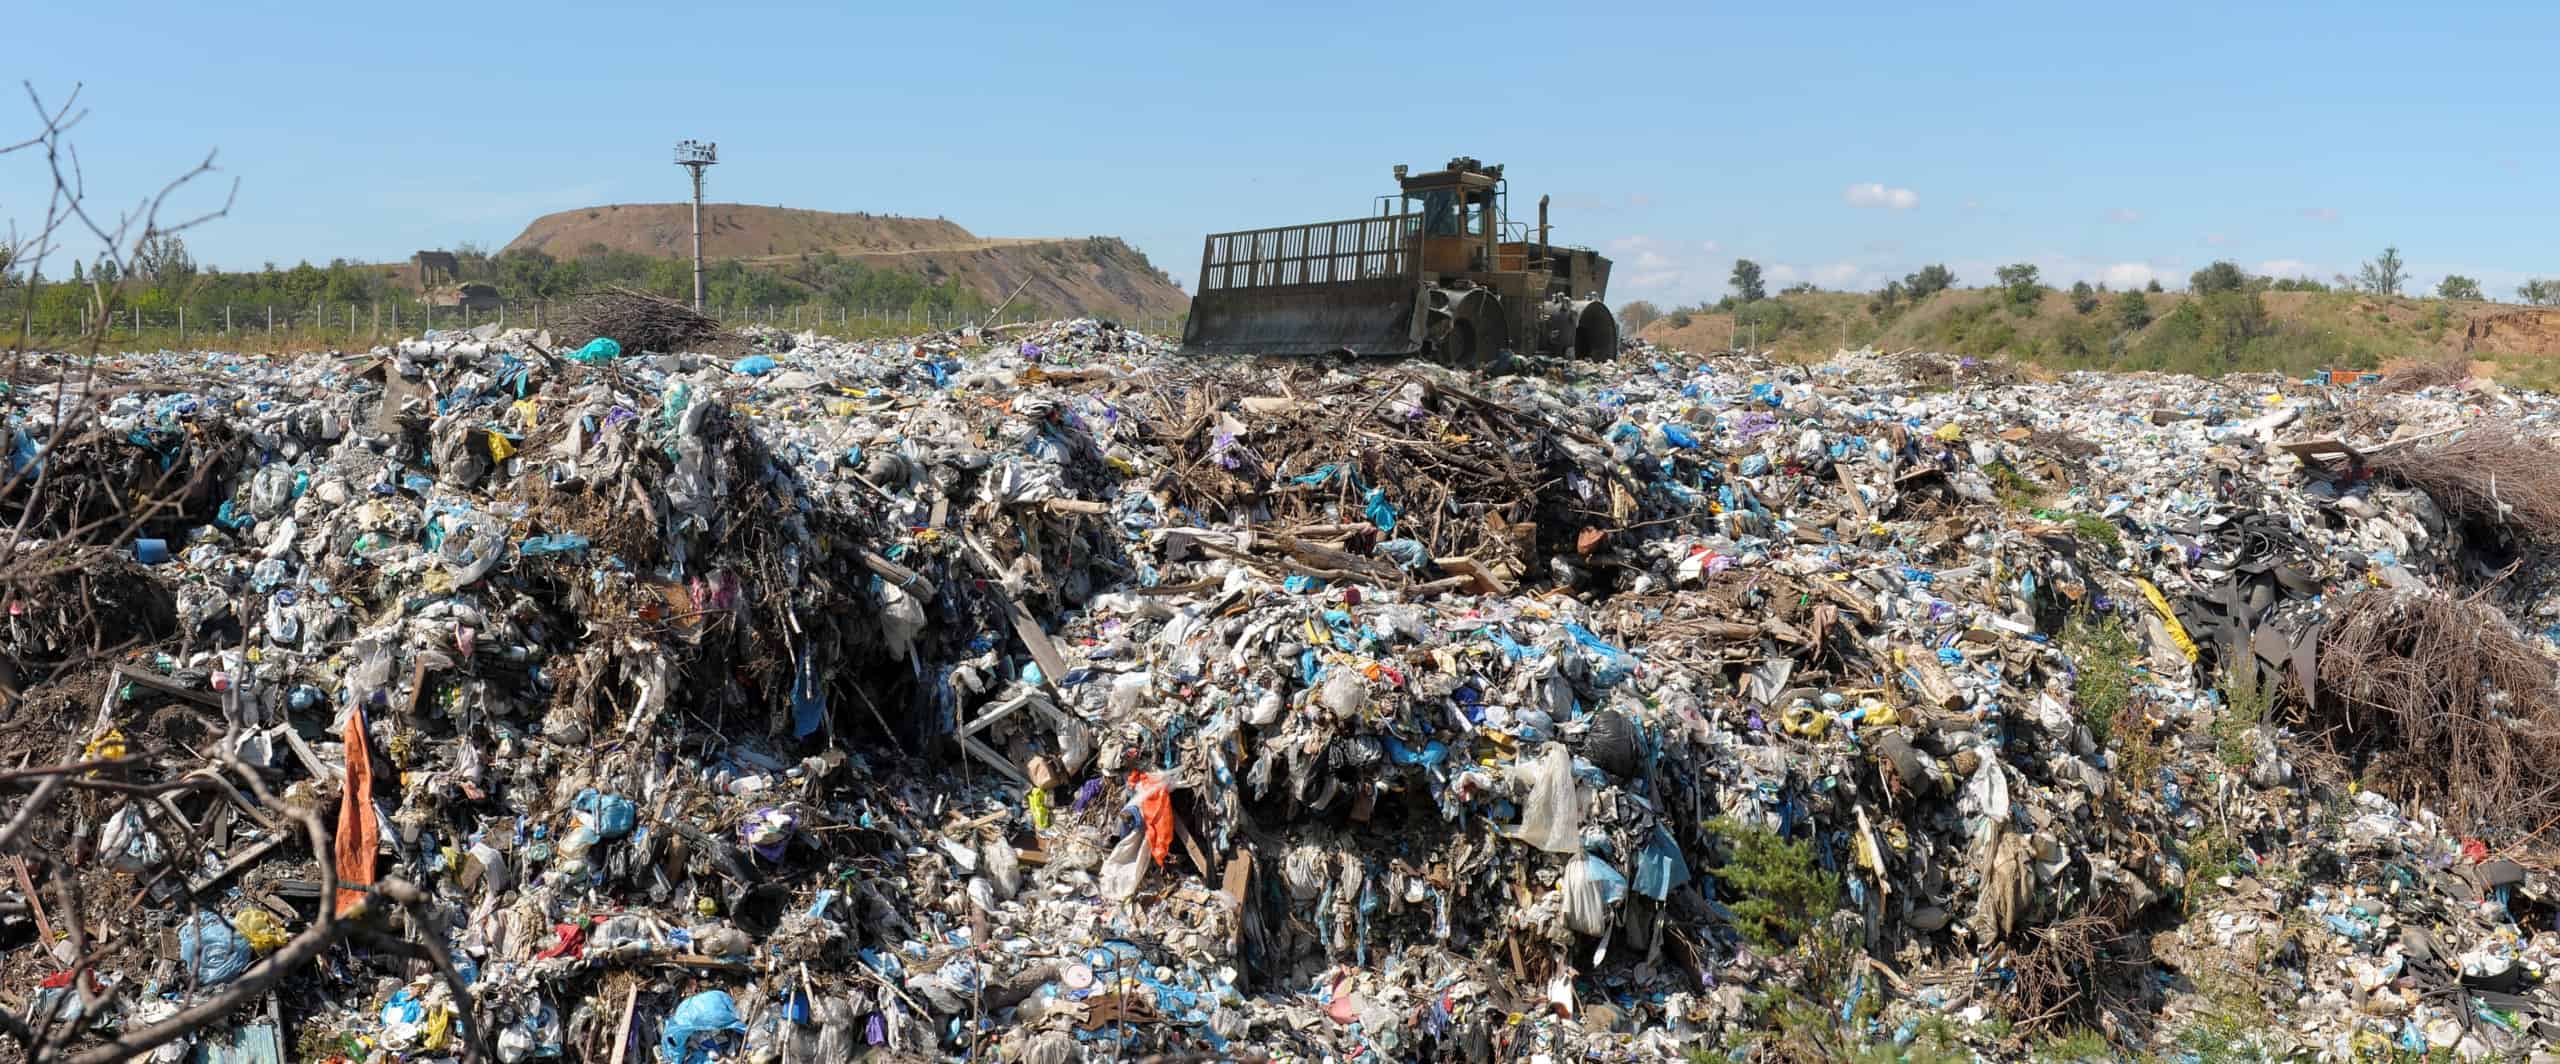 Bulldozer on a landfill site